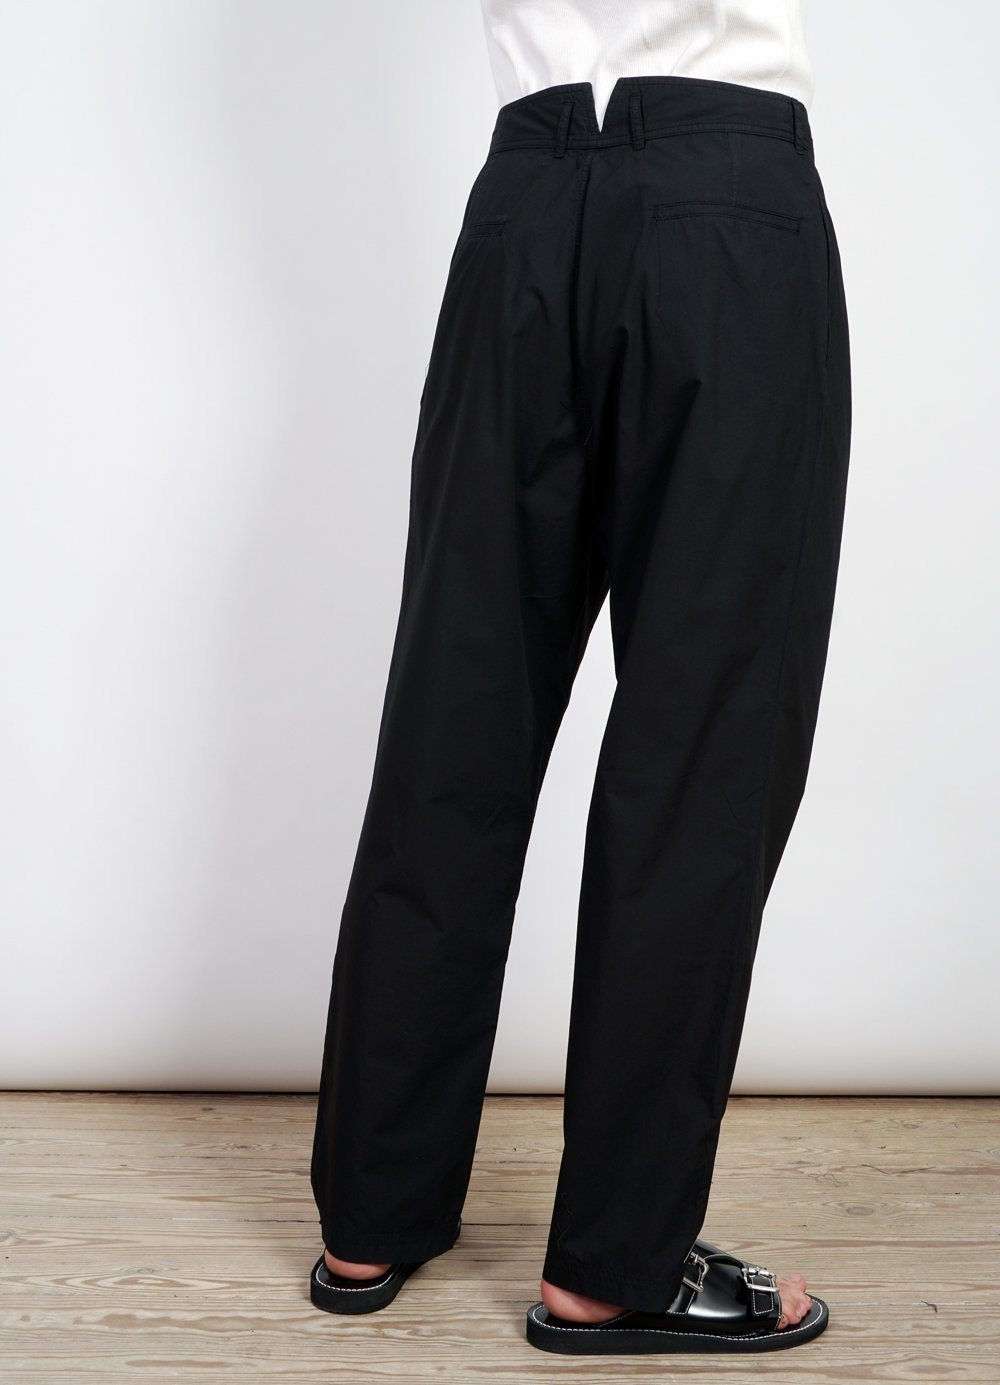 EIGIL | Light Wide Cut Summer Trousers | Black -HANSEN Garments- HANSEN Garments